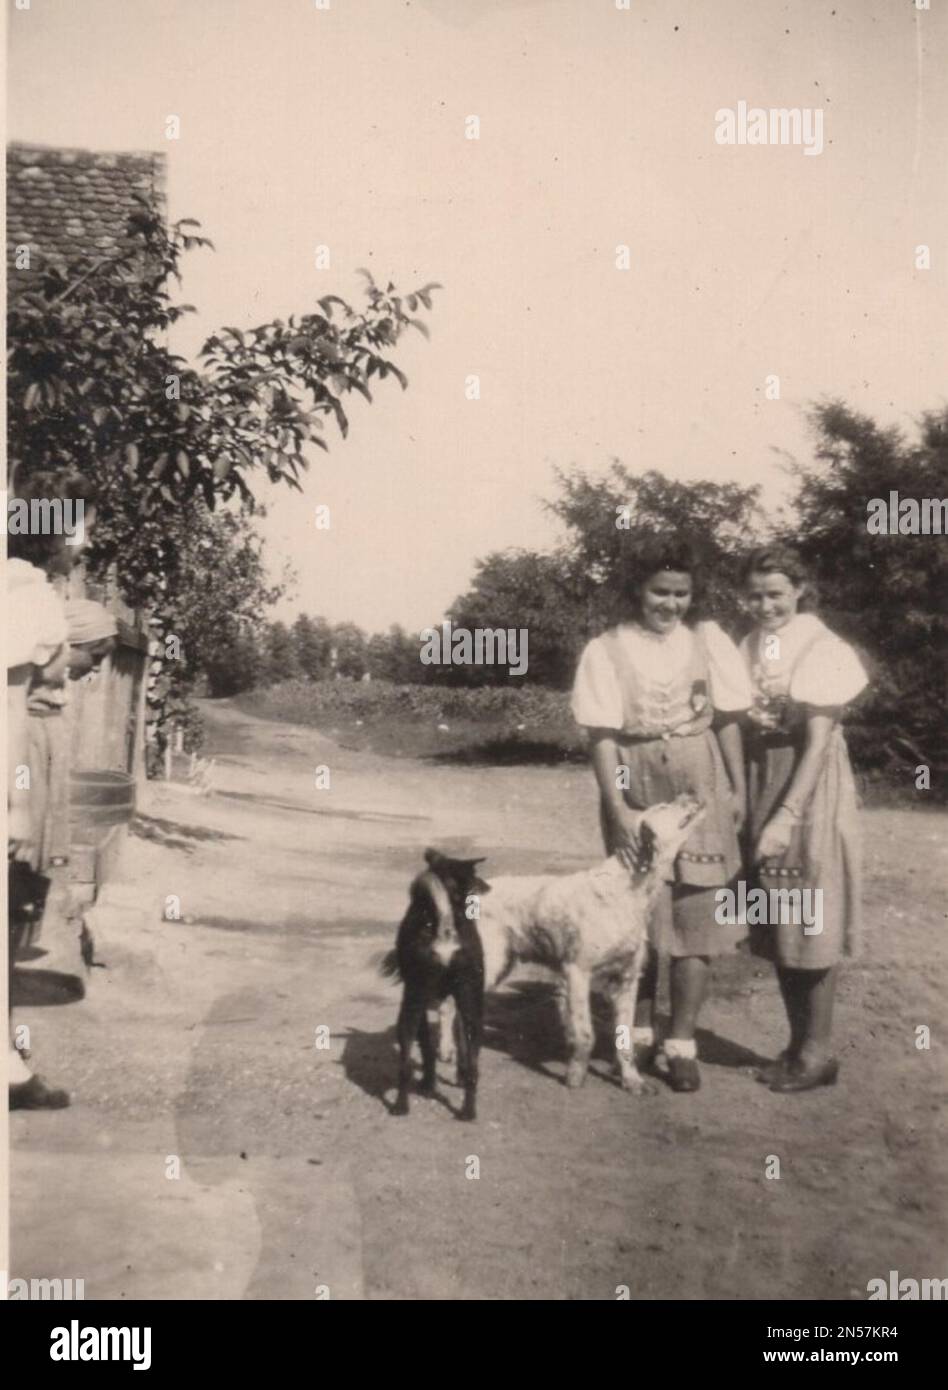 Vintage Photographie sur les chiens d'animaux : deux jeunes filles avec deux chiens. Un chien blanc et un chien noir marchent avec les dames. Les femmes portent des vêtements traditionnels folkloriques hongrois au 1930s Banque D'Images